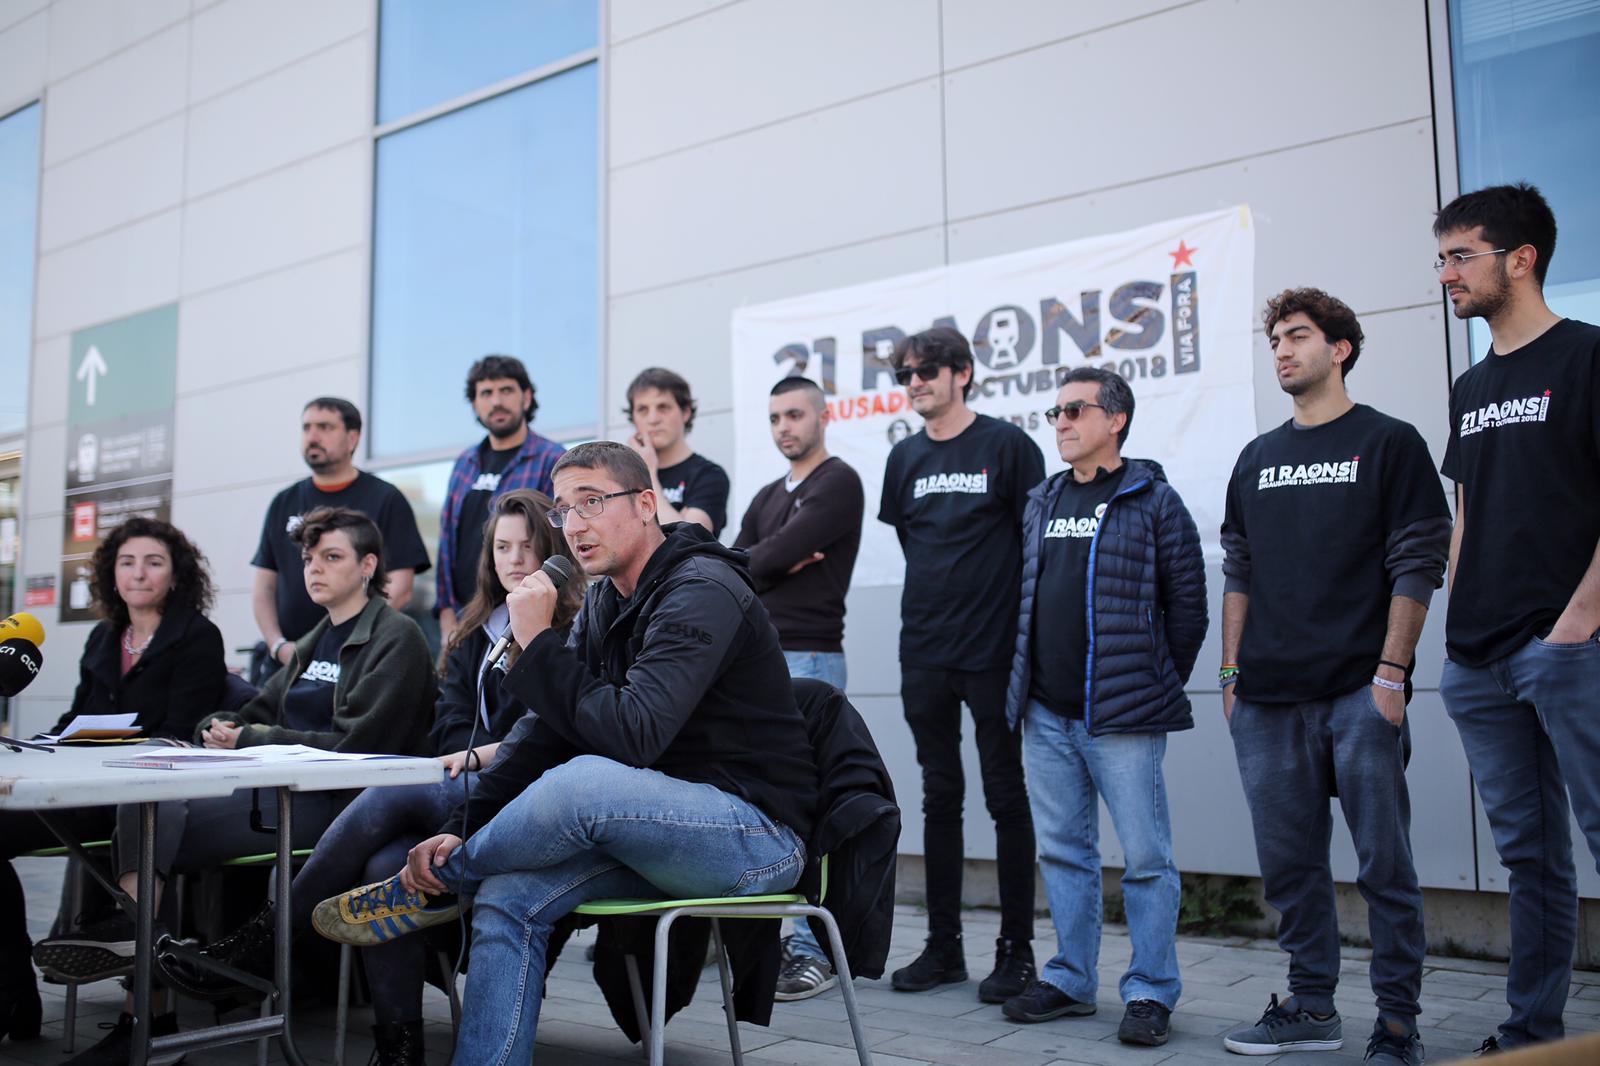 Detenidos por el corte del AVE en Girona denunciarán a la policía española